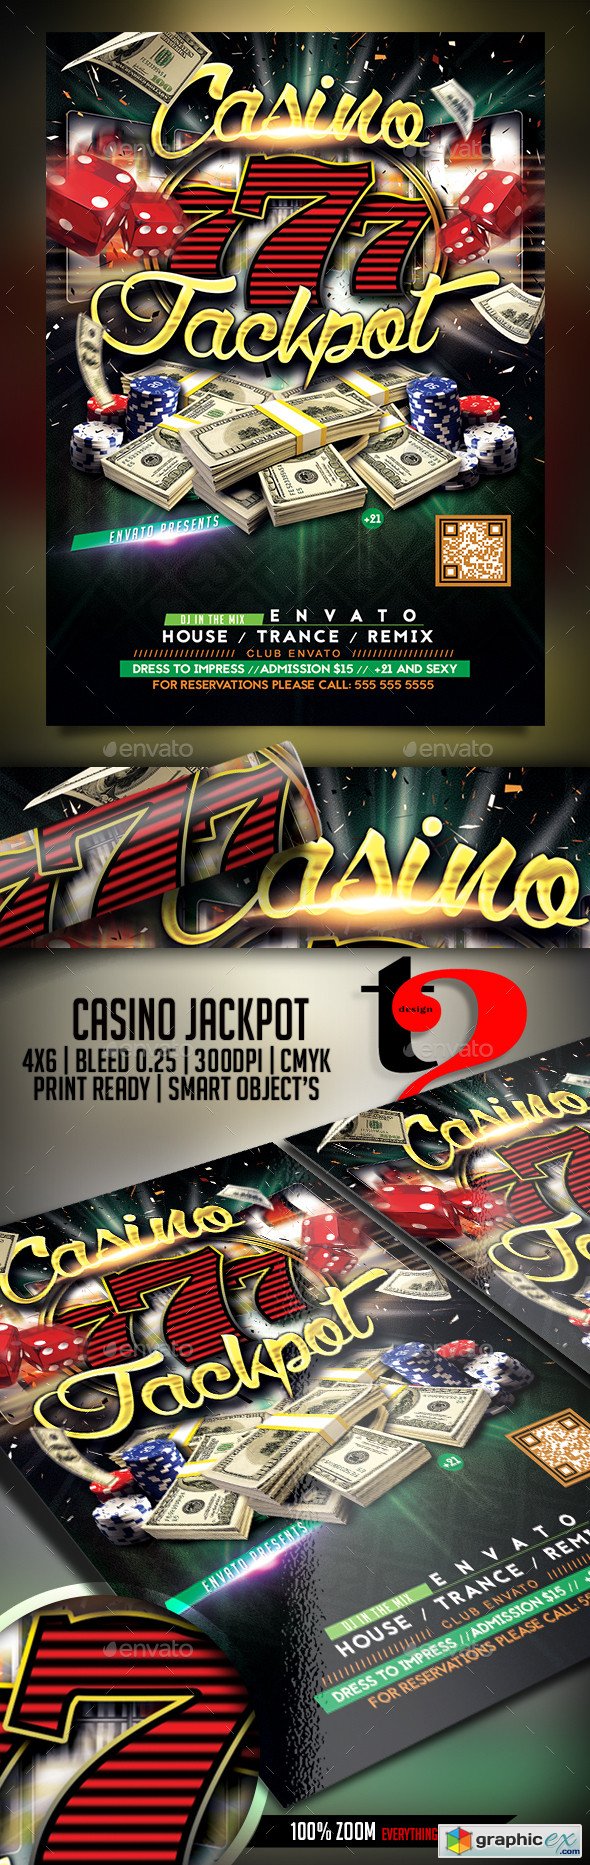 Casino Jackpot Flyer Template